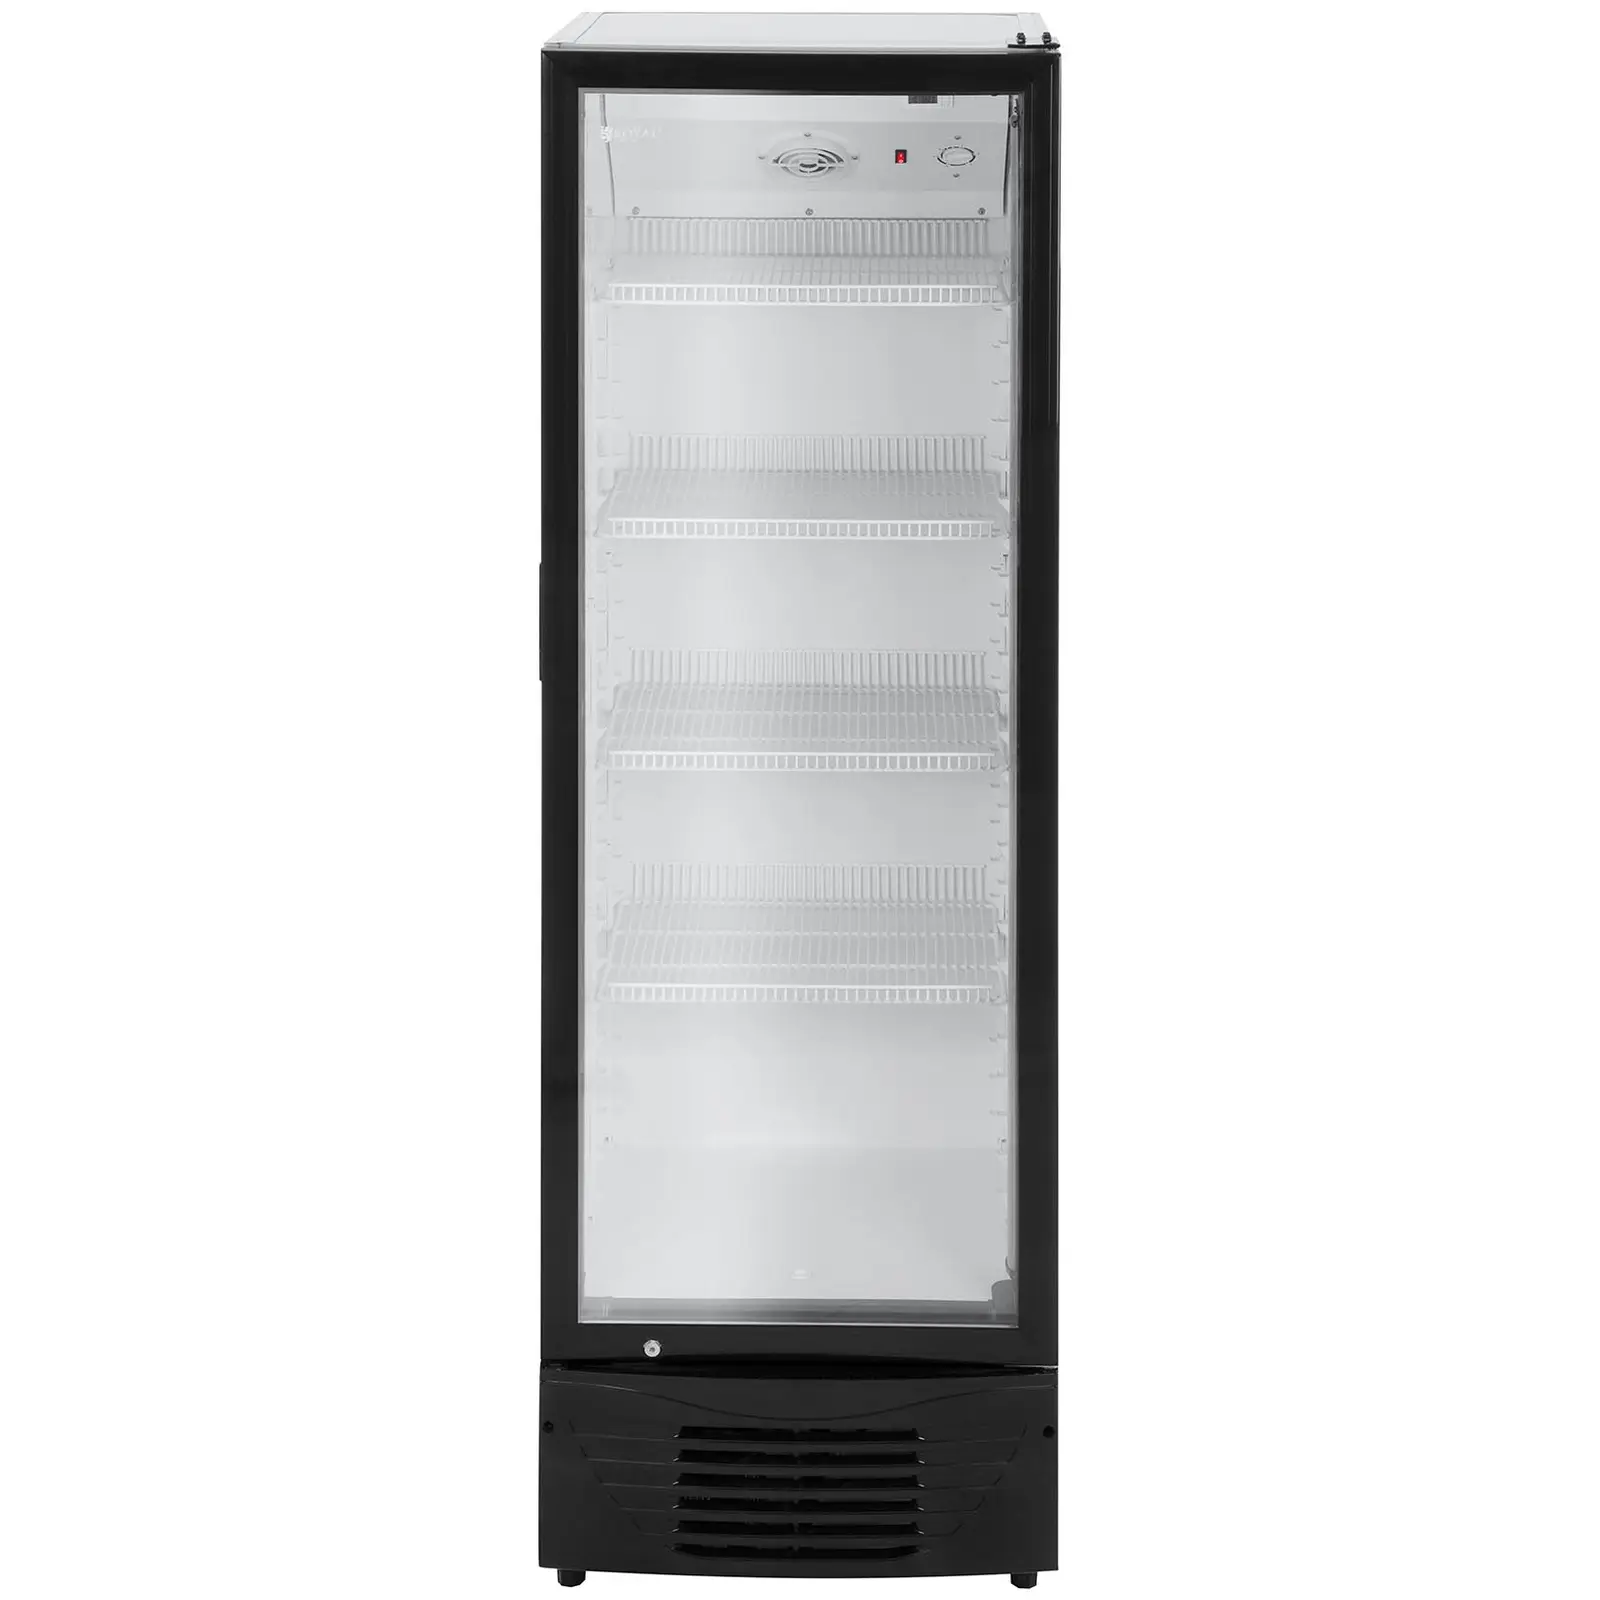 Arca refrigeradora comercial - 320 L - LED - Armação preta